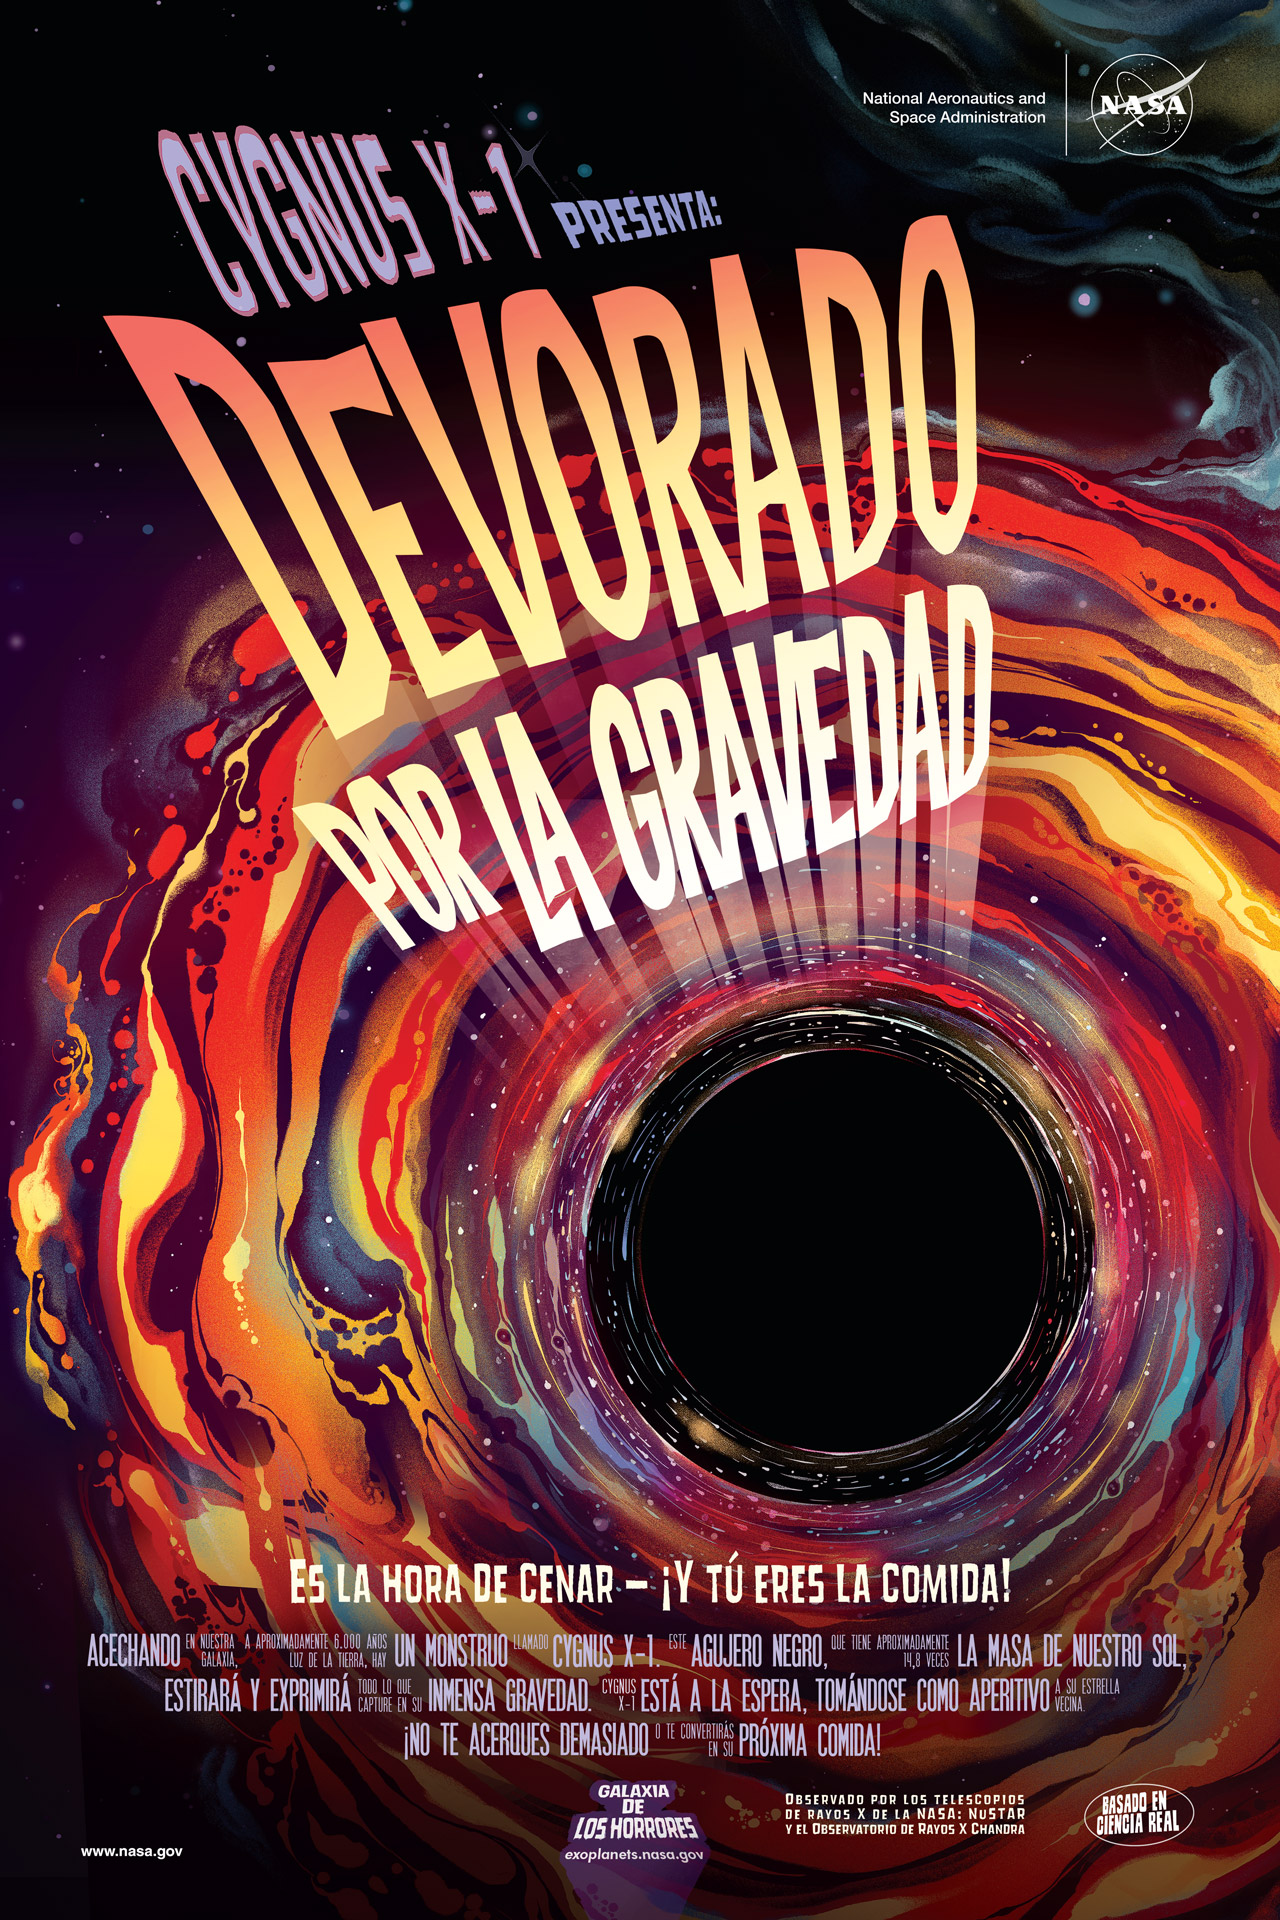 Devorado por la Gravedad – "Galaxy of Horrors" póster (En Español)